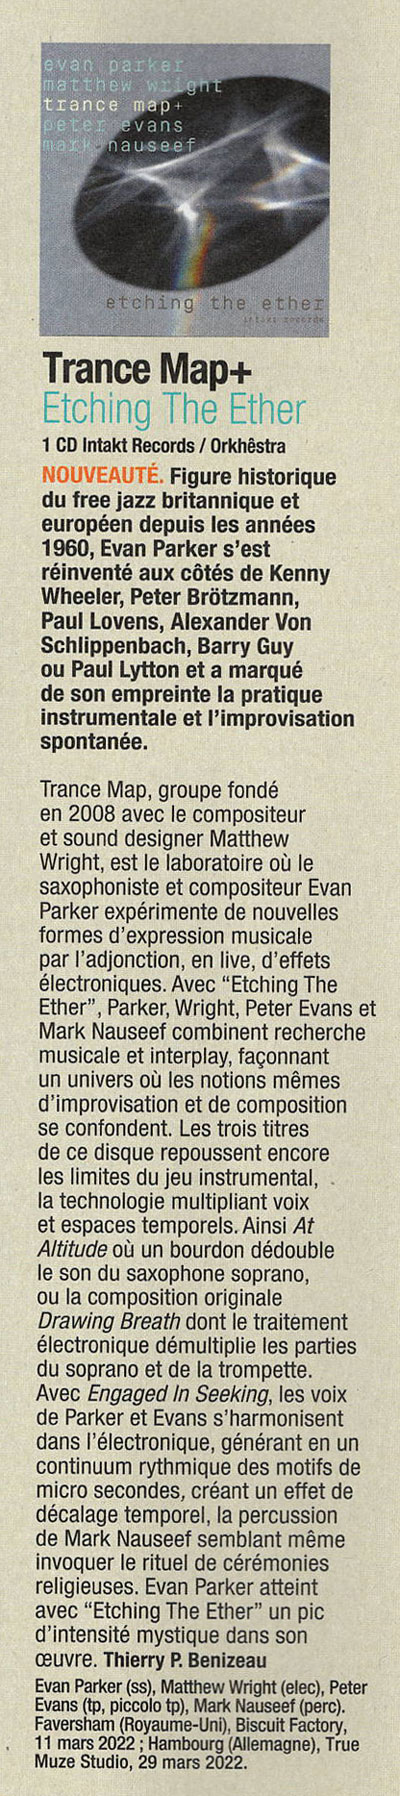 Trance Map, groupe fondé en 2008 avec le compositeur et sound designer Matthew Wright, est le laboratoire où le saxophoniste et compositeur Evan Parker expérimente de nouvelles formes d'expression musicale par l'adjonction, en live, d'effets électroniques.